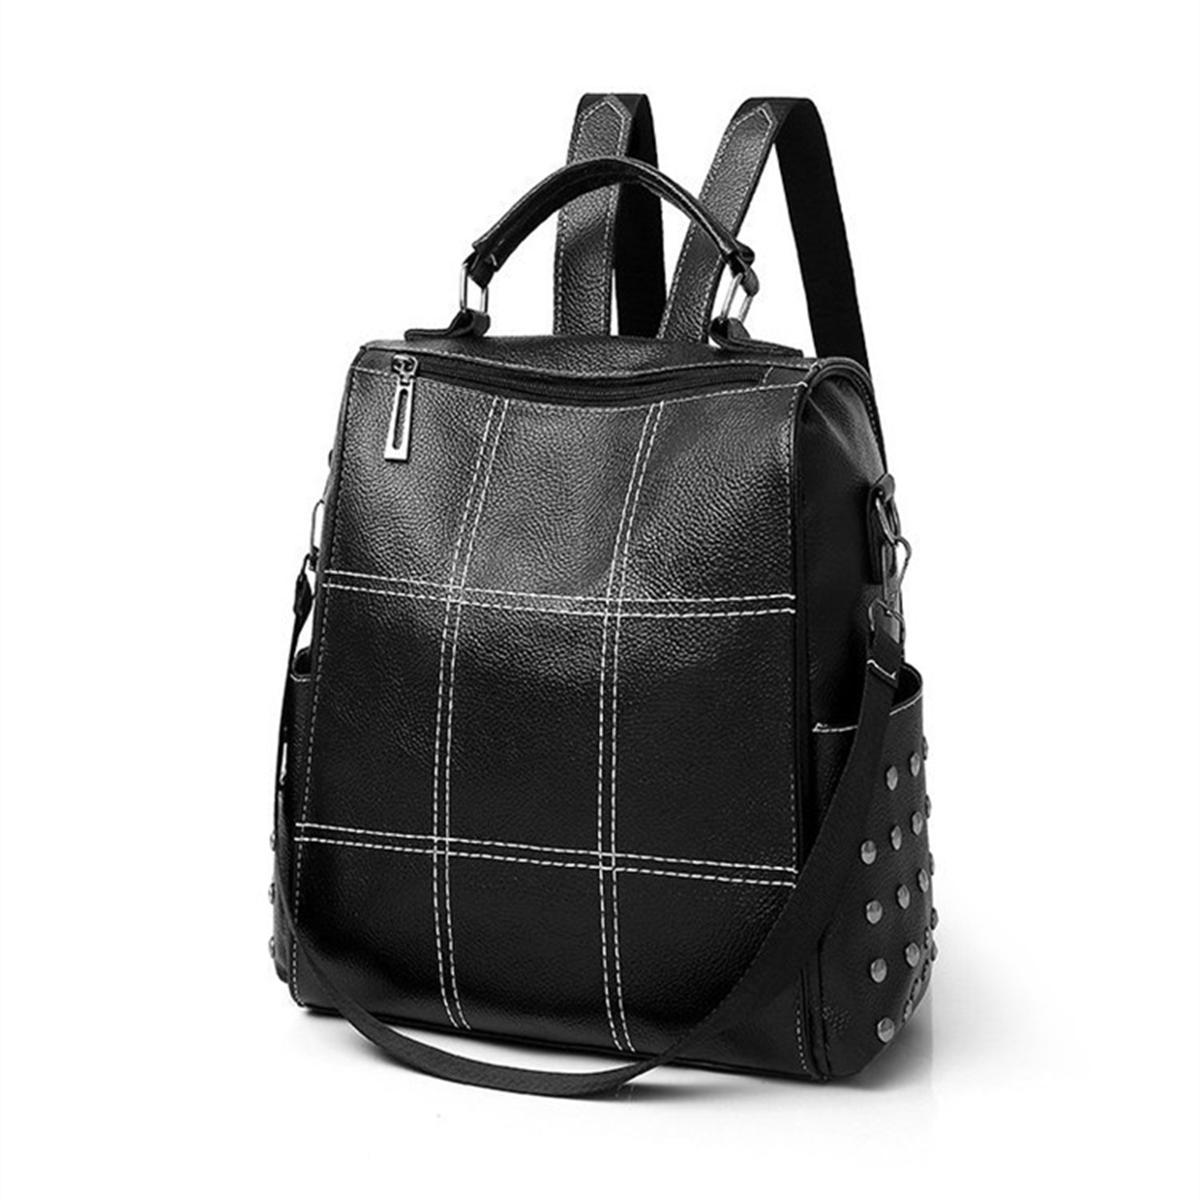 Damen Dame Mädchen Schule Leder Rucksack Outdoor Travel Tragbare Handtasche Schultertasche